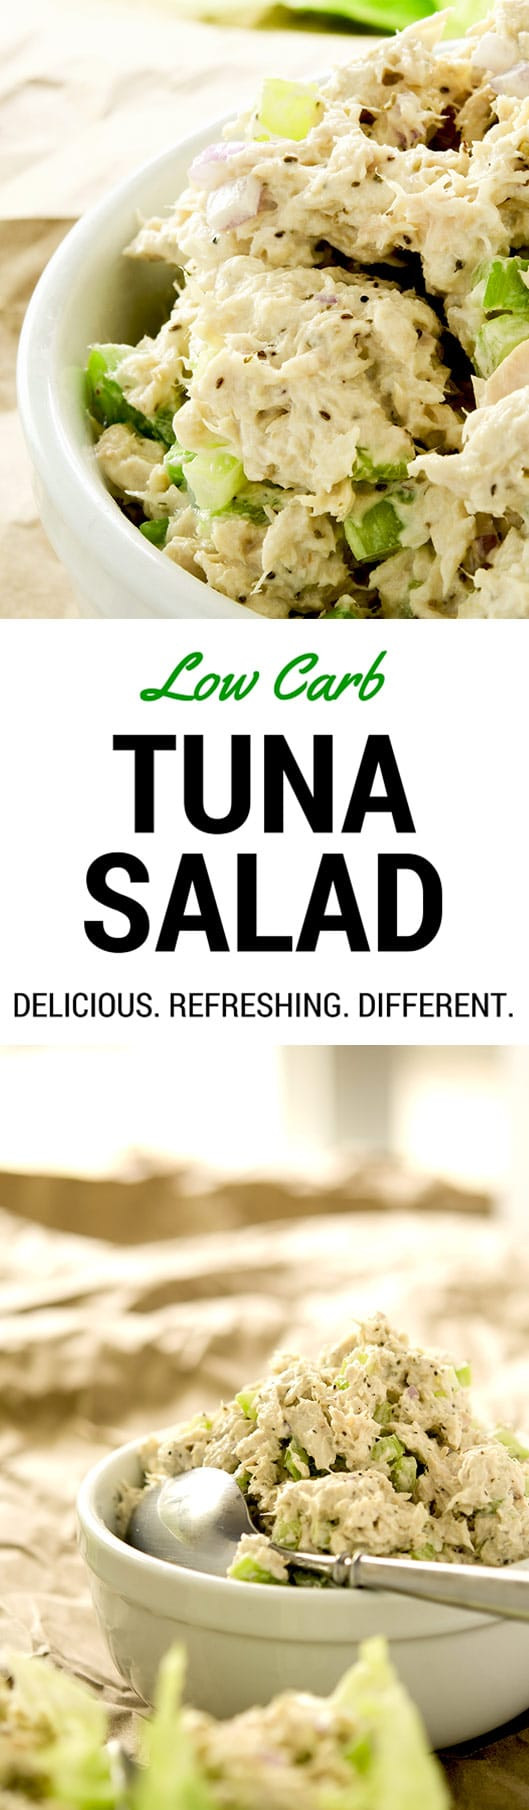 Low Carb Tuna Recipes
 Low Carb Tuna Salad